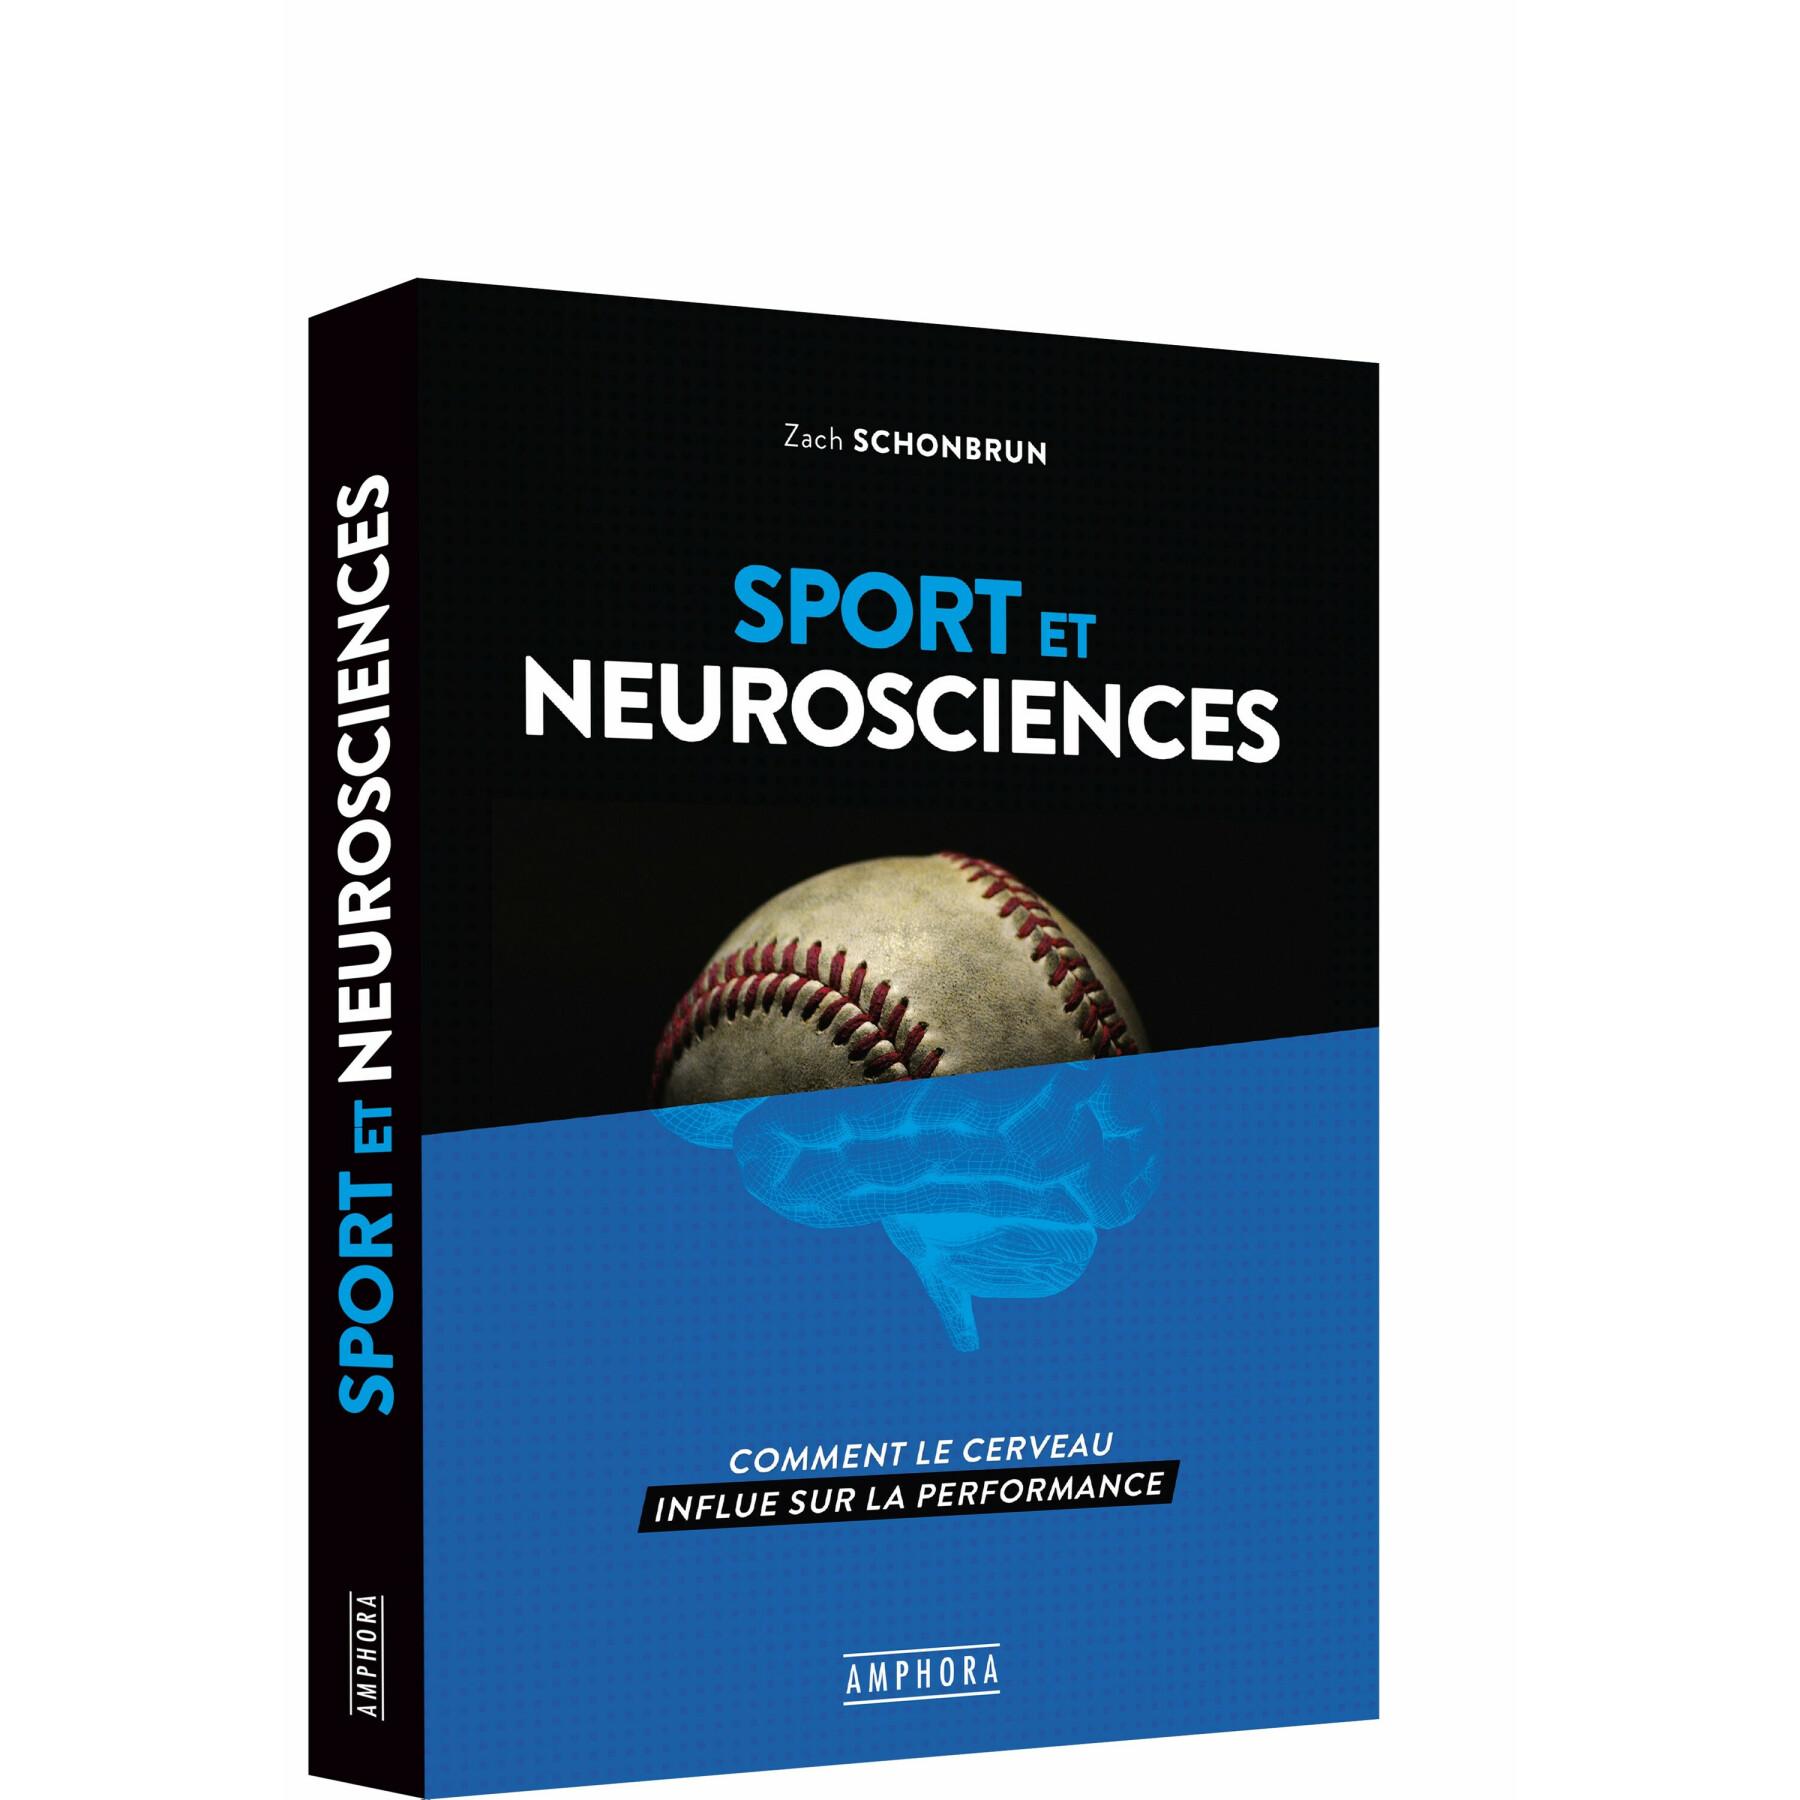 Desporto e neurociência do livro Amphora